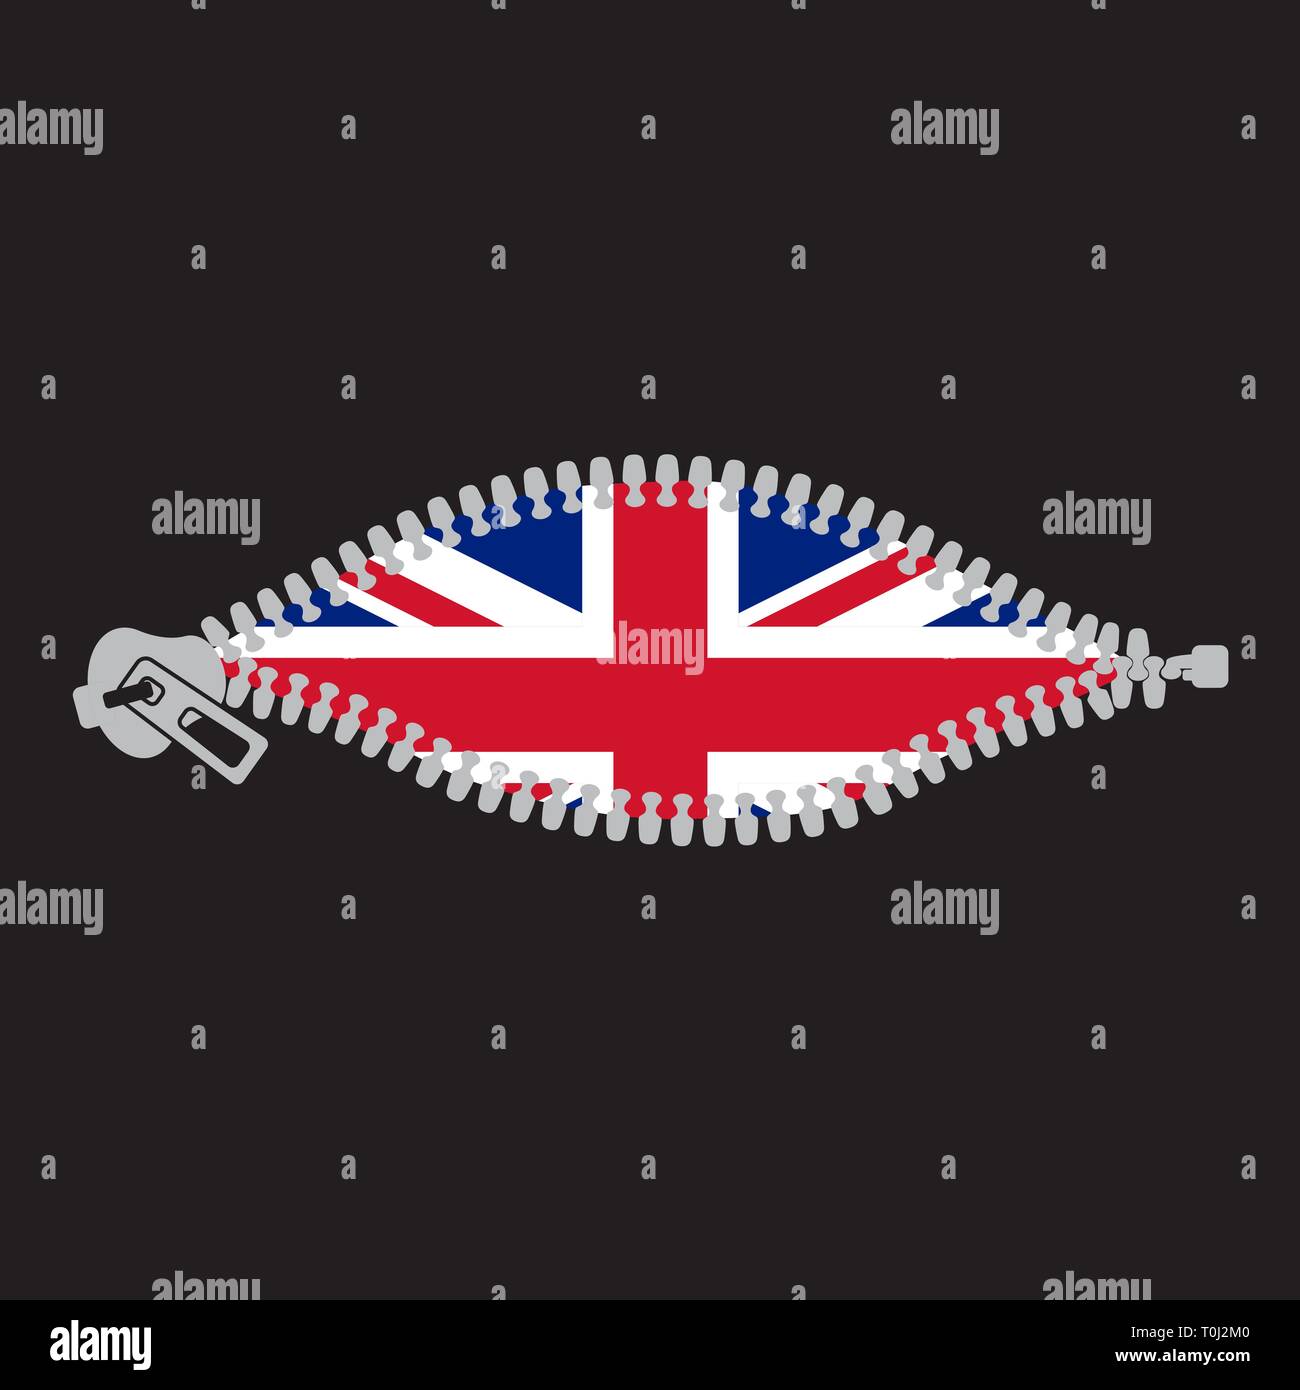 Fermeture éclair ouverte révélant Royaume-Uni de Grande-Bretagne d'un drapeau Illustration de Vecteur